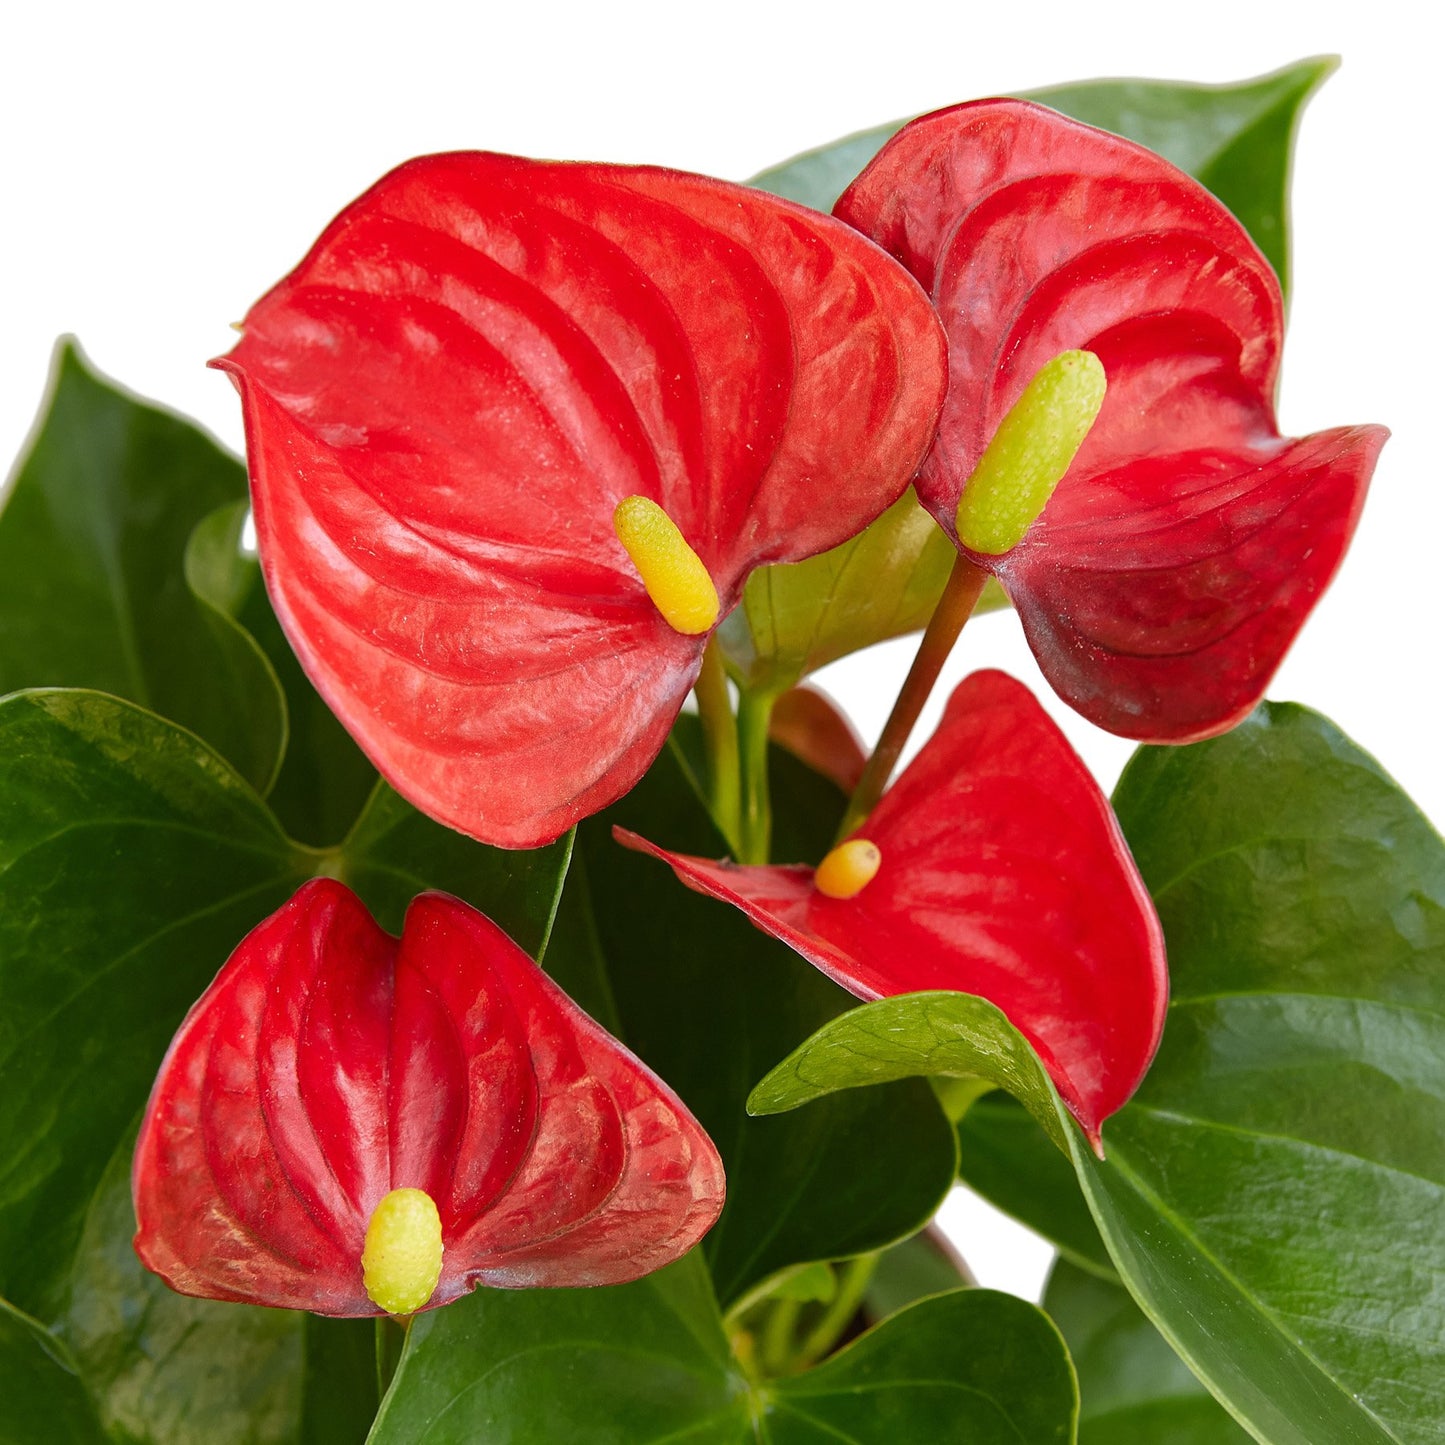 Anthurium 'Red' tropical indoor plant